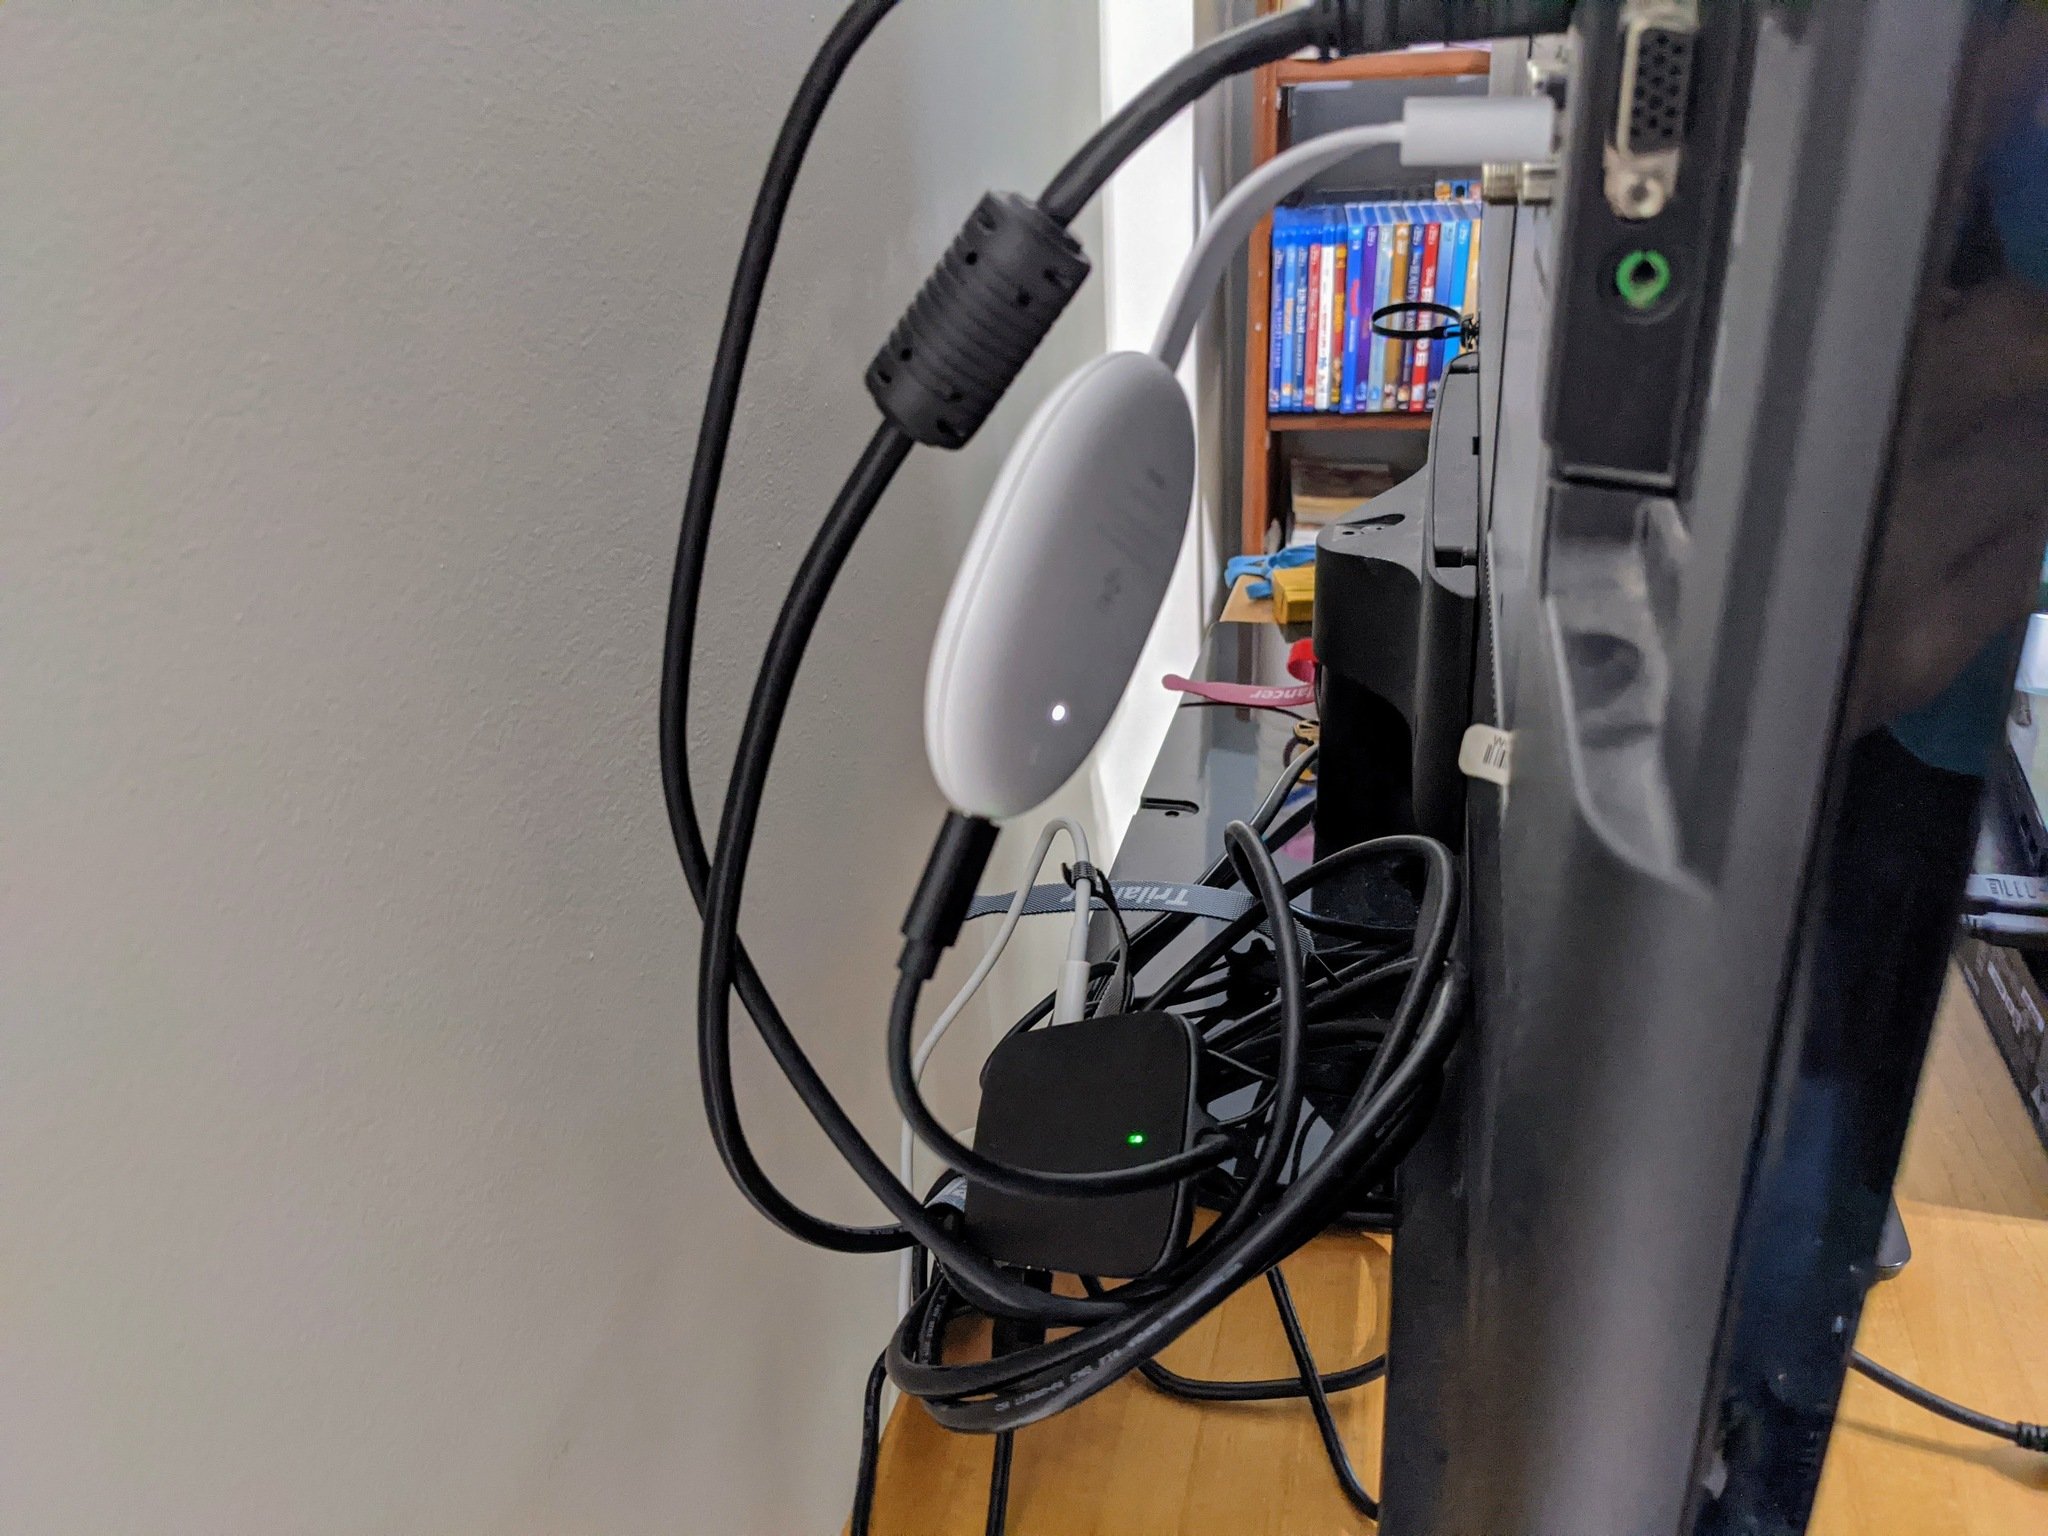 Adaptateur Ethernet pour Chromecast TV, 1 pièce, USB 2.0 à RJ45